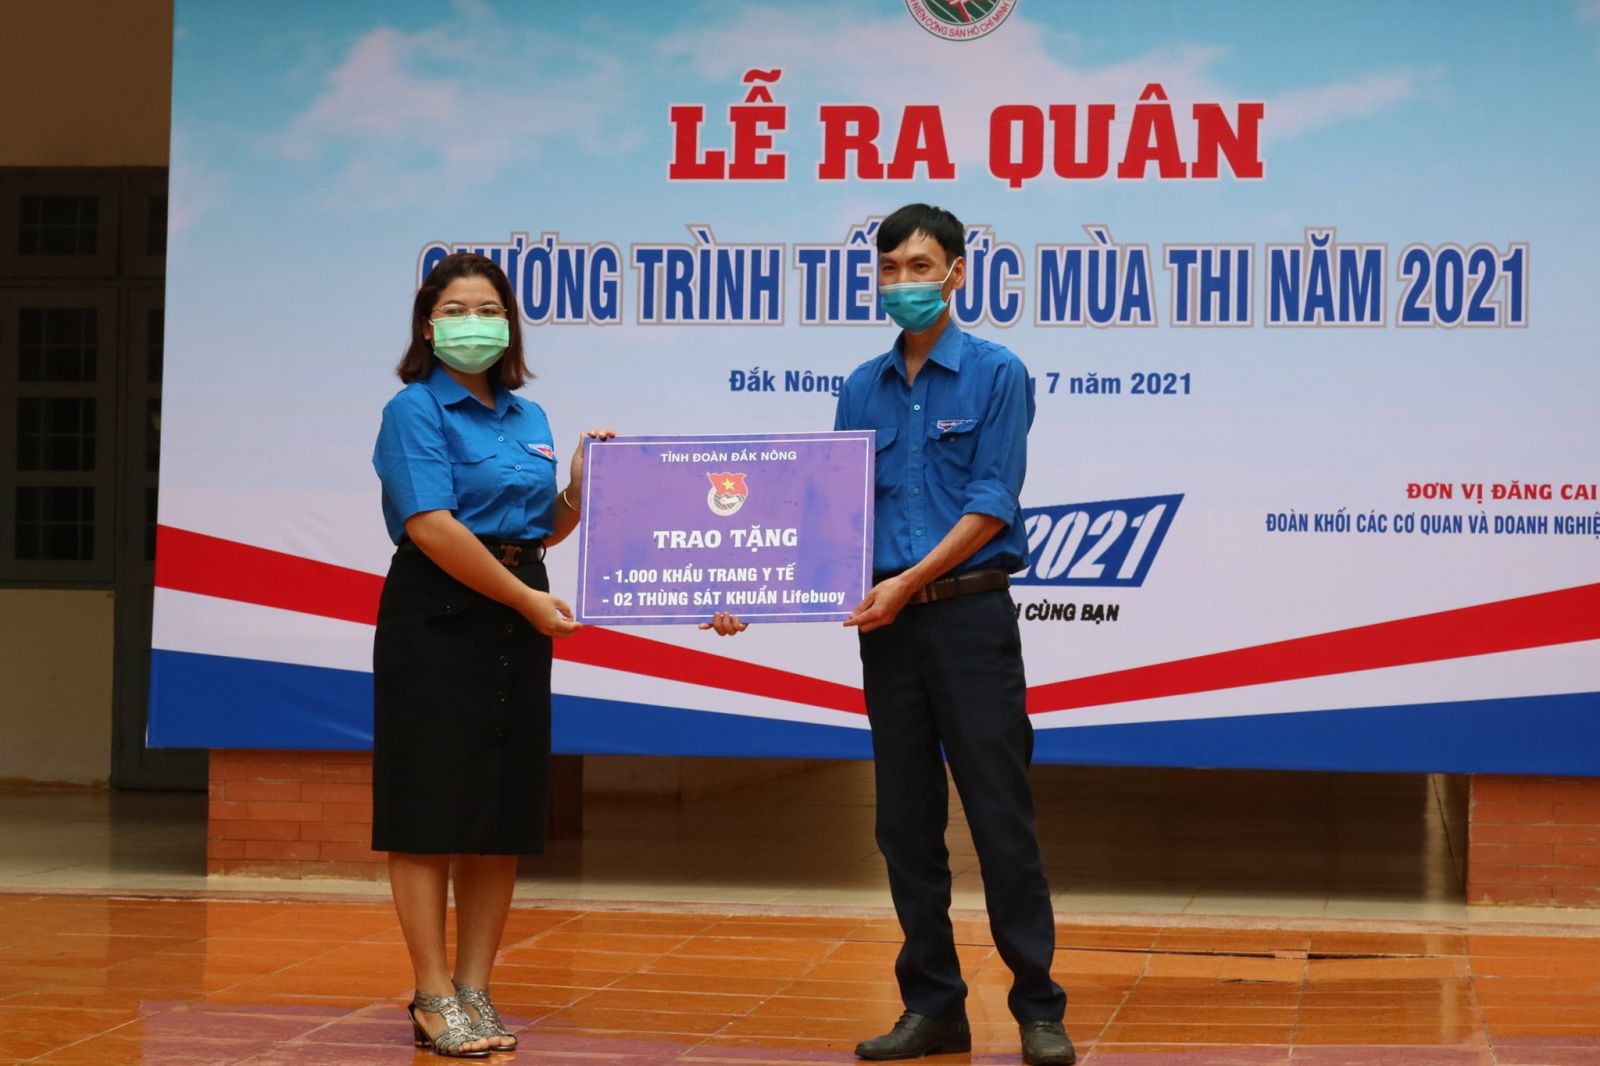 Đoàn Khối các cơ quan và doanh nghiệp tỉnh đăng cai tổ chức Lễ ra quân “Tiếp sức mùa thi” tỉnh Đắk Nông năm 2021